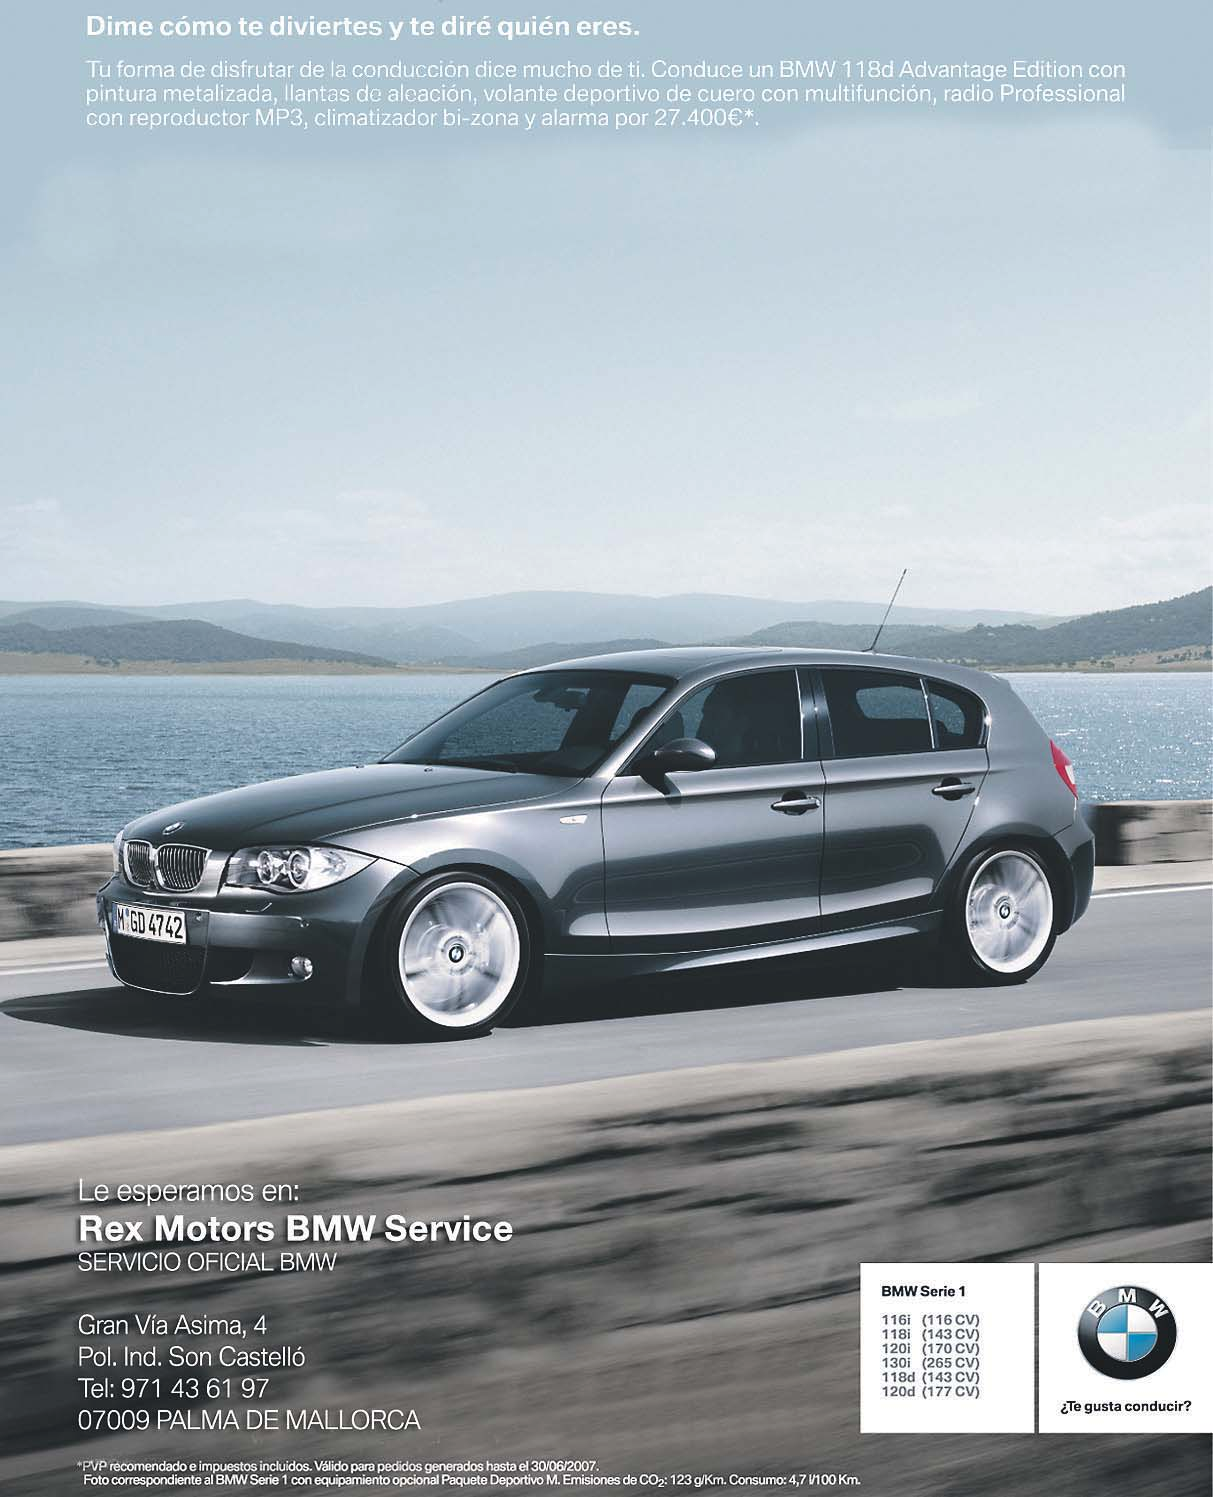 Internacional del Año". Este año el galardón es para el nuevo motor BMW de gasolina Twin Turbo de 3.0 litros, disponible para todas las carrocerías de la exitosa Serie 3 de BMW.